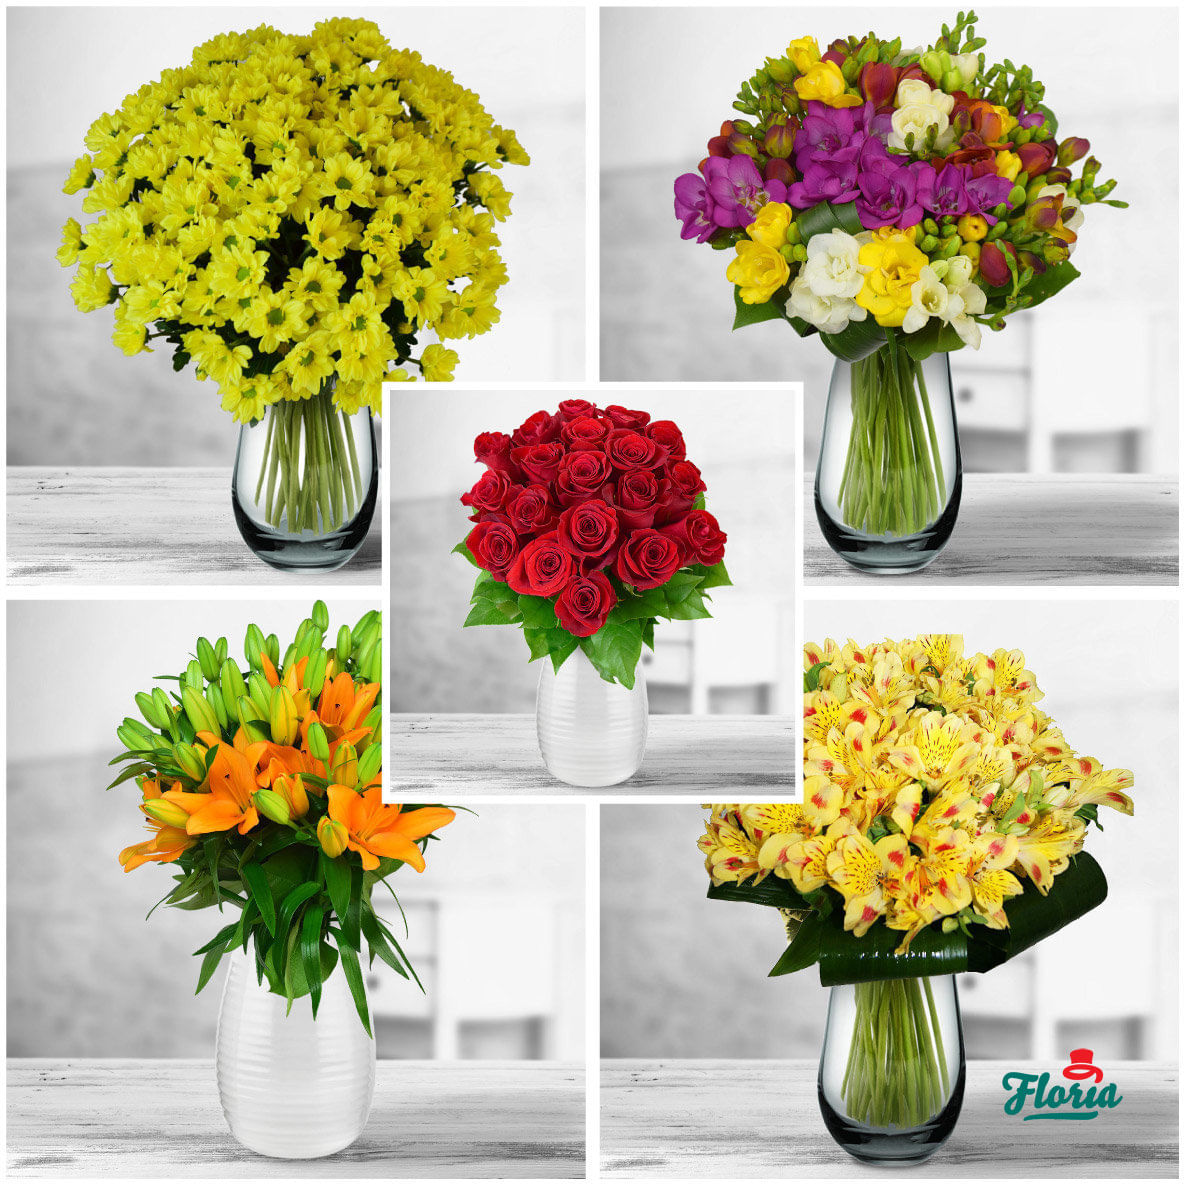 Abonament floral – Surpriza in fiecare zi floria.ro